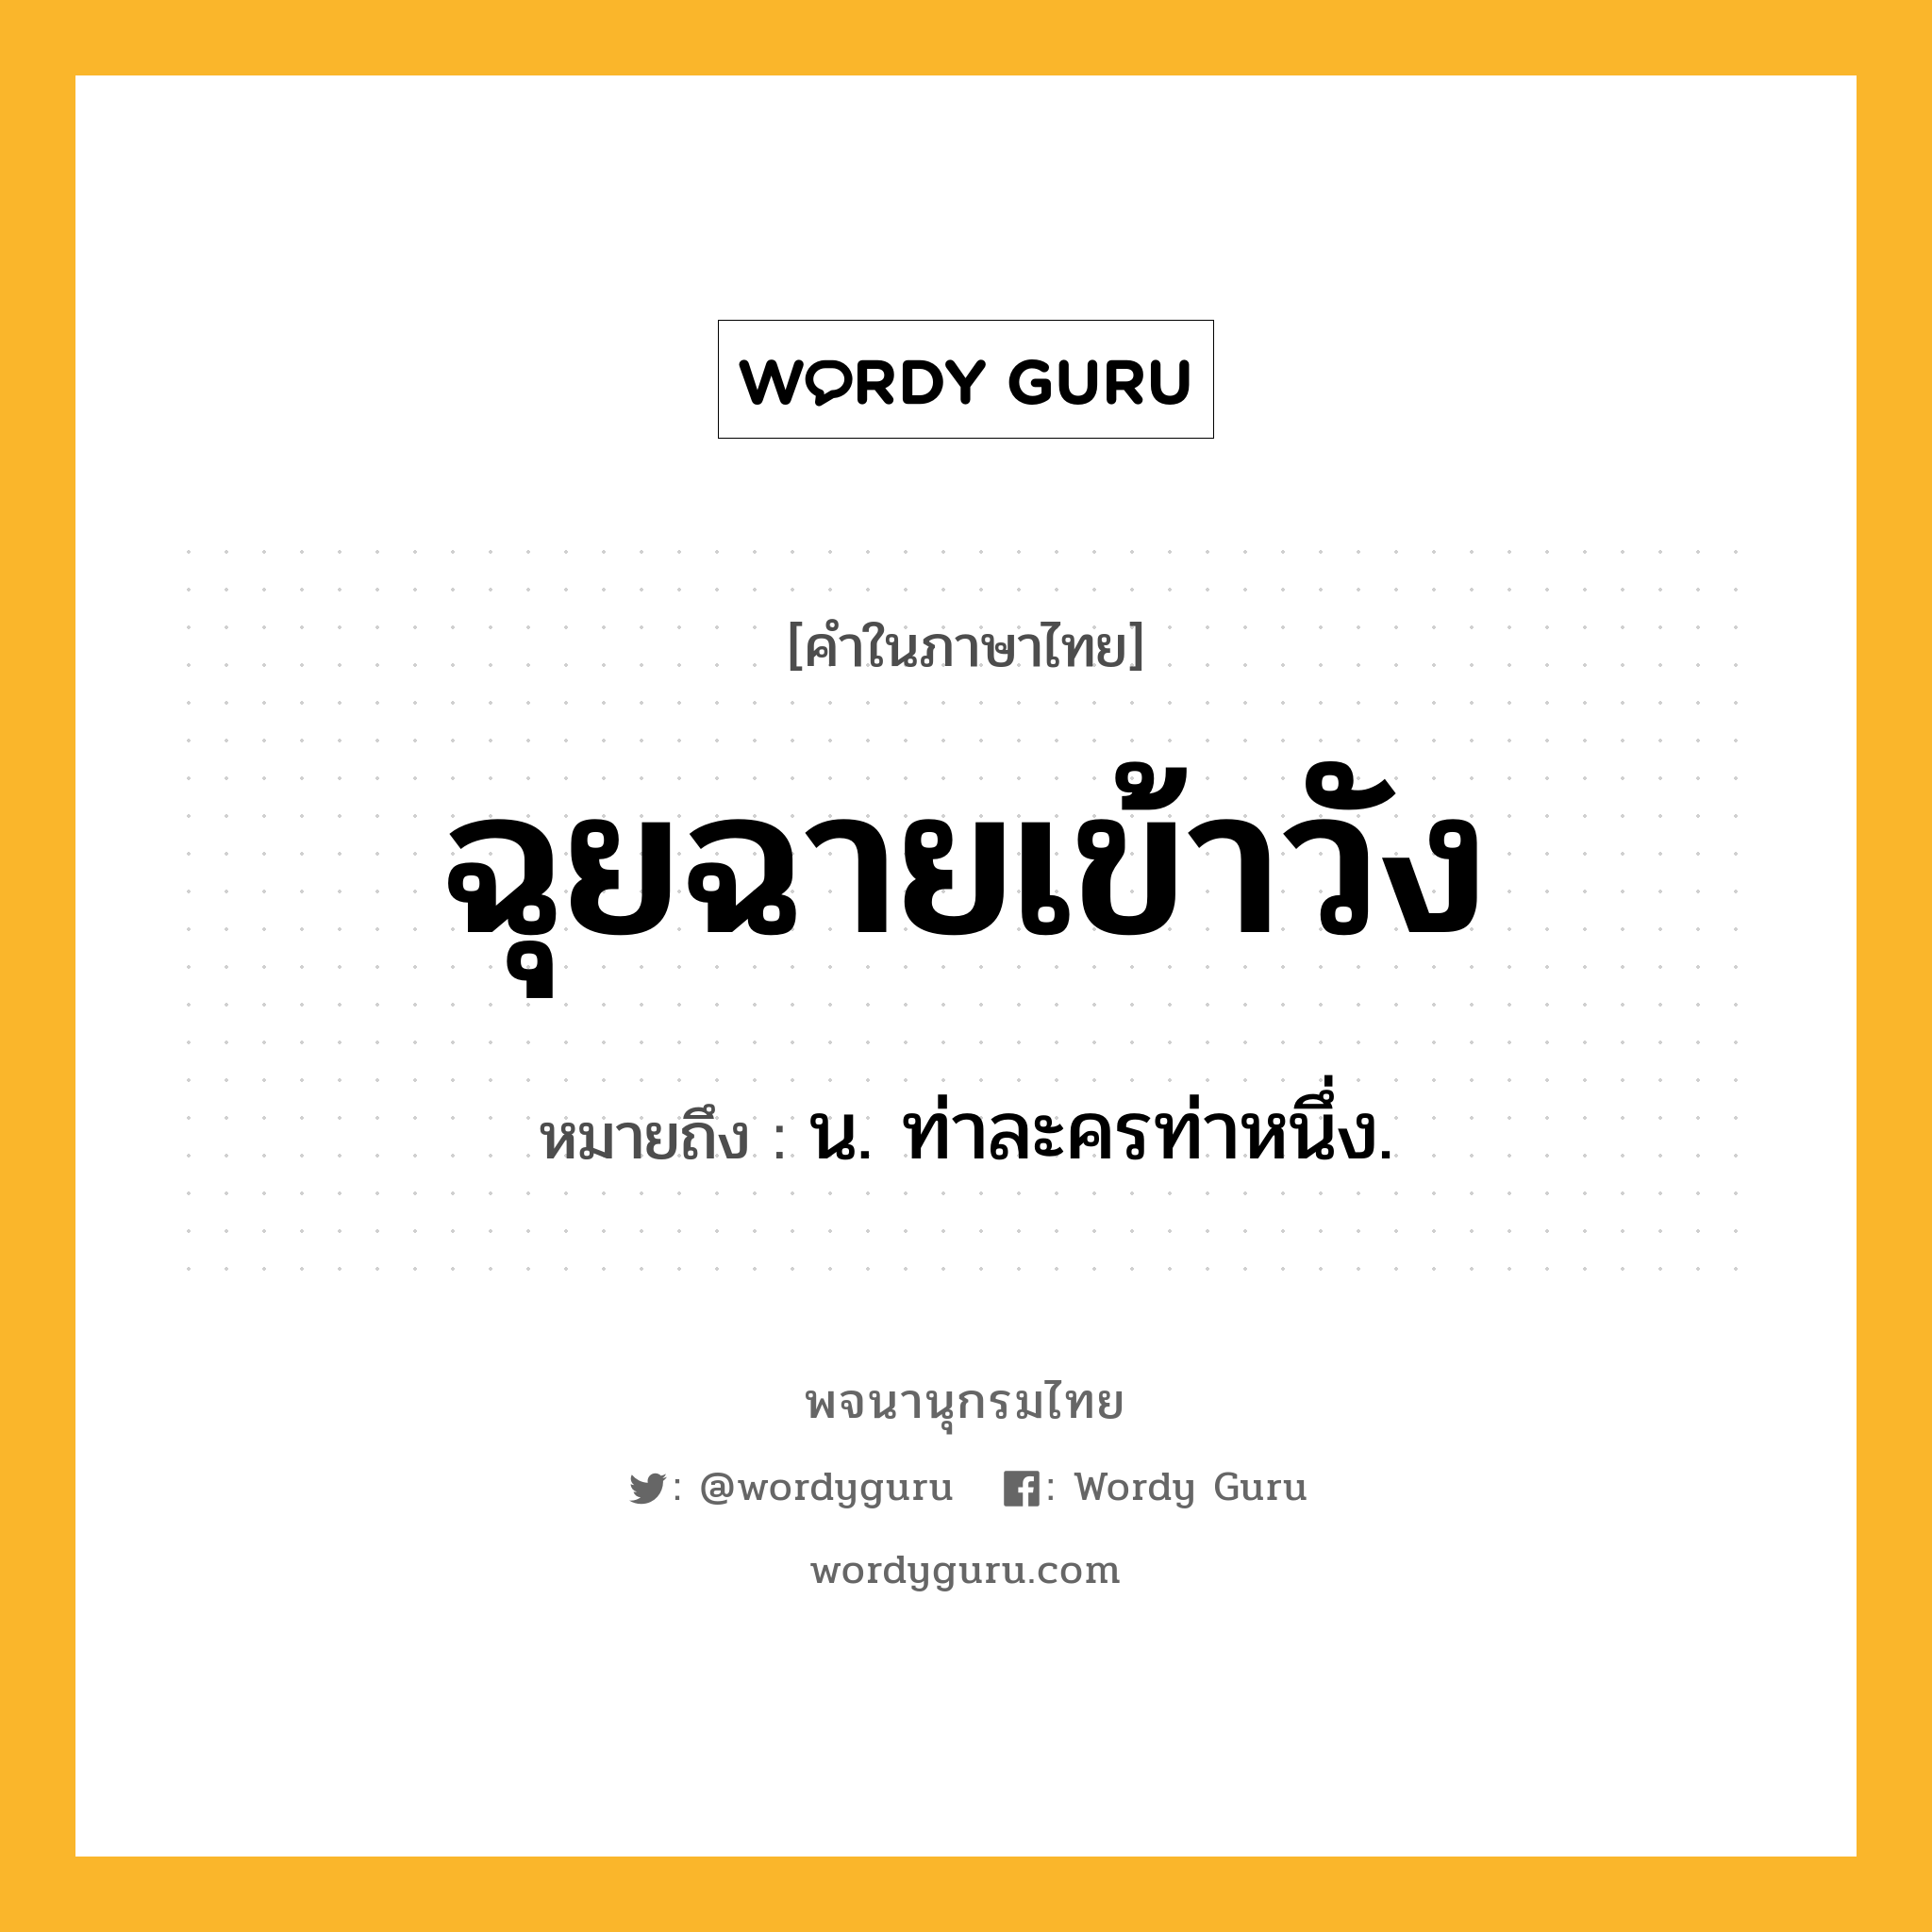 ฉุยฉายเข้าวัง ความหมาย หมายถึงอะไร?, คำในภาษาไทย ฉุยฉายเข้าวัง หมายถึง น. ท่าละครท่าหนึ่ง.